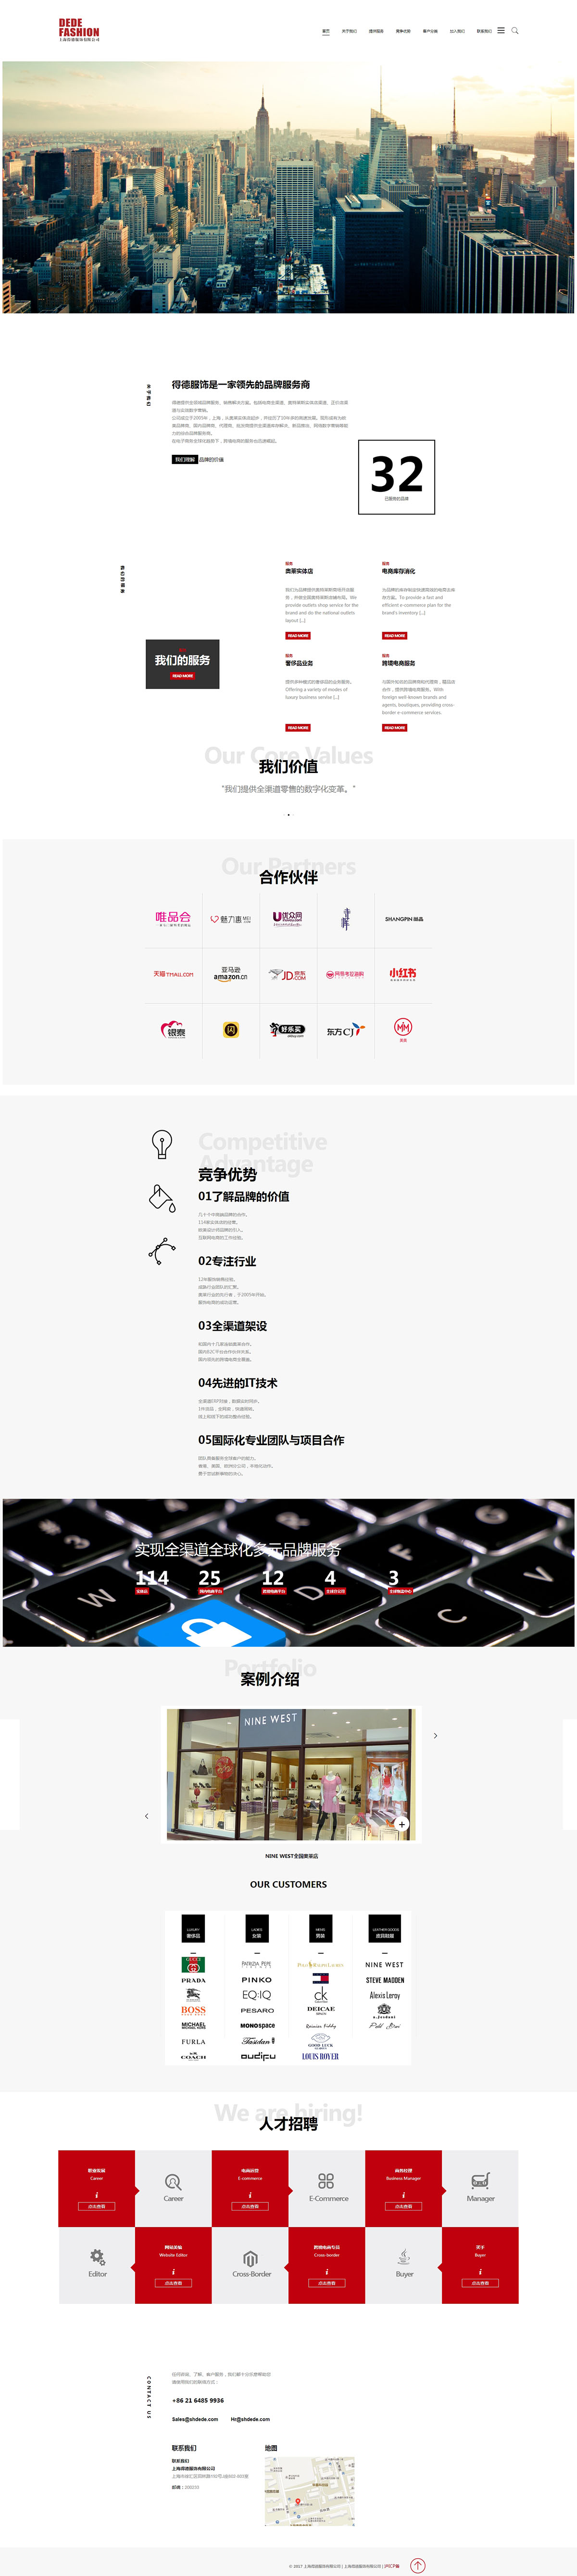 上海得德服饰有限公司网站制作案例